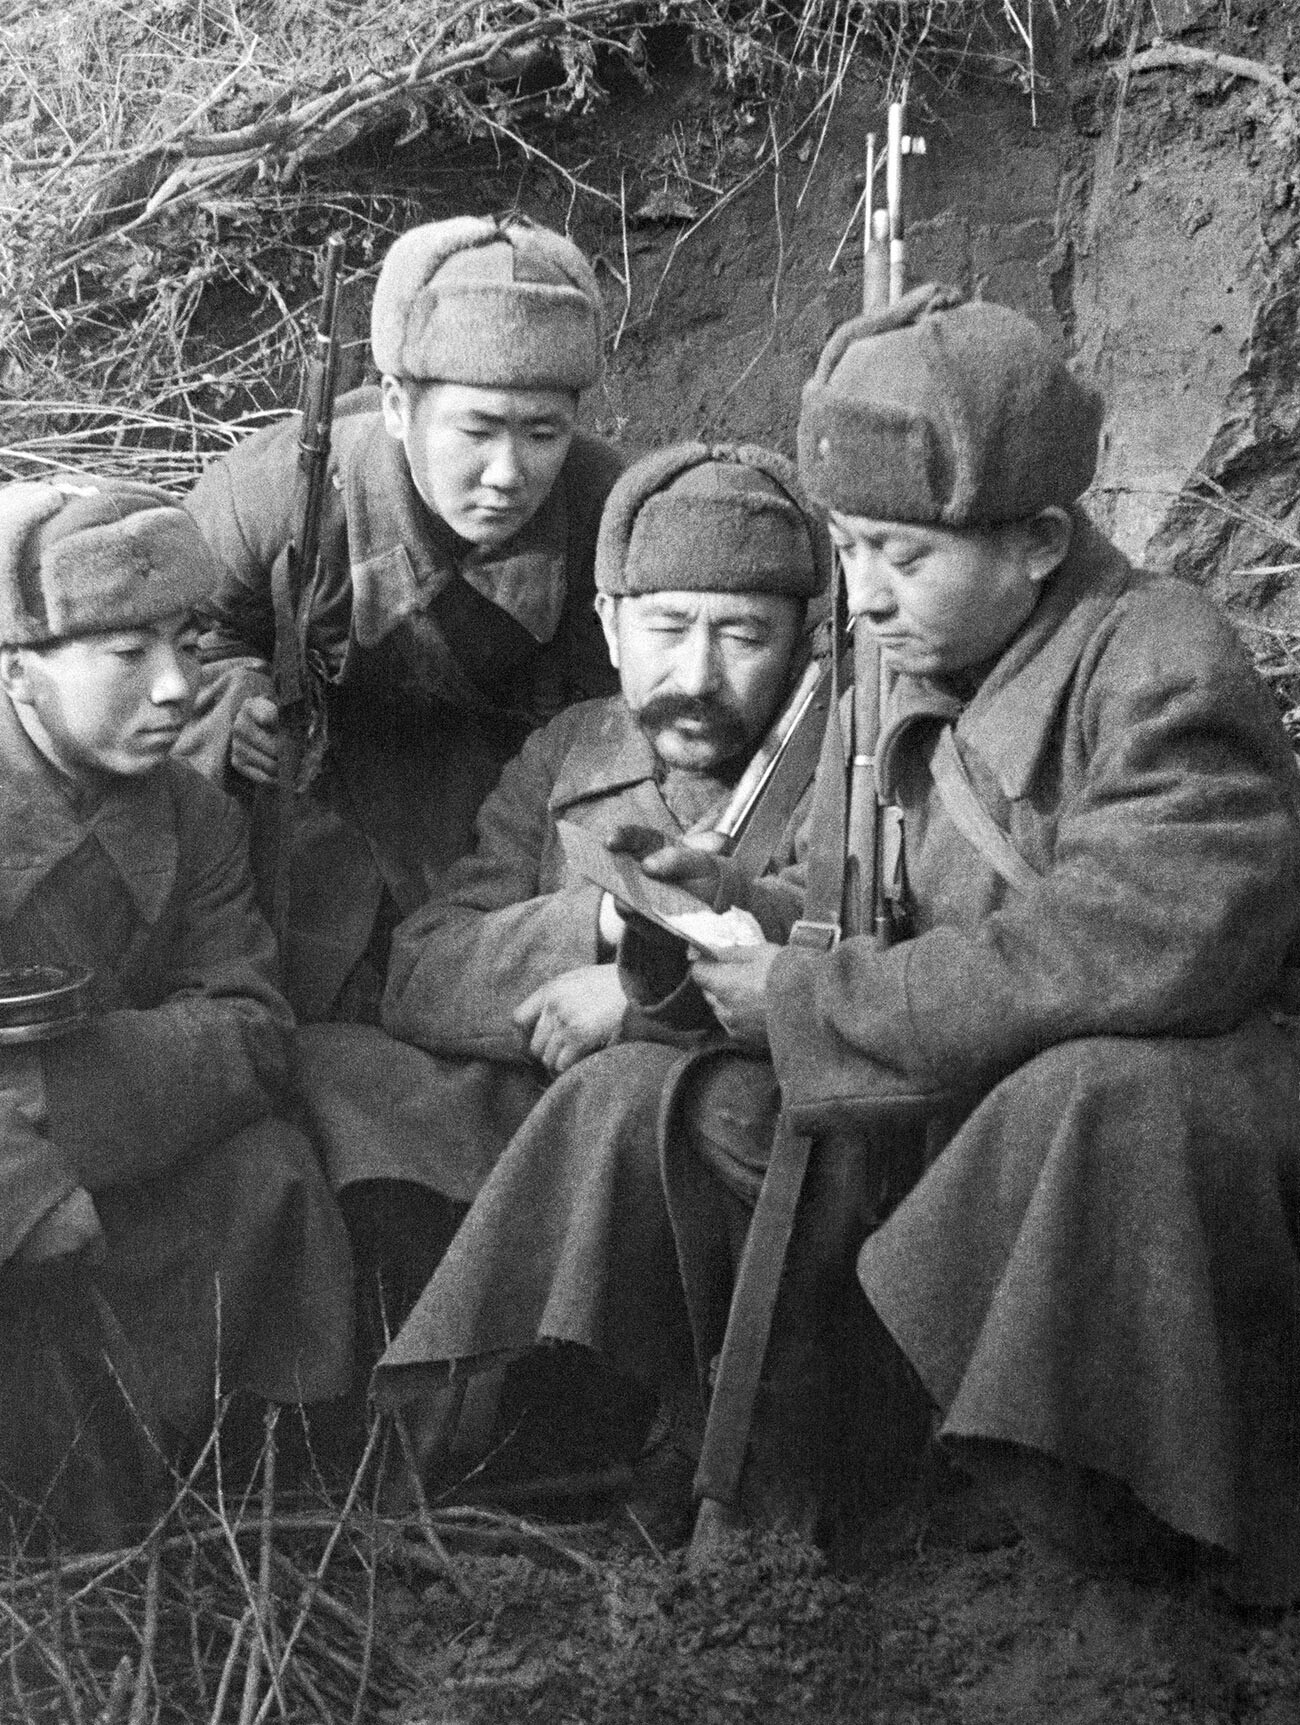 第二次世界大戦中、地元から届いた手紙を読むカザフ人兵士